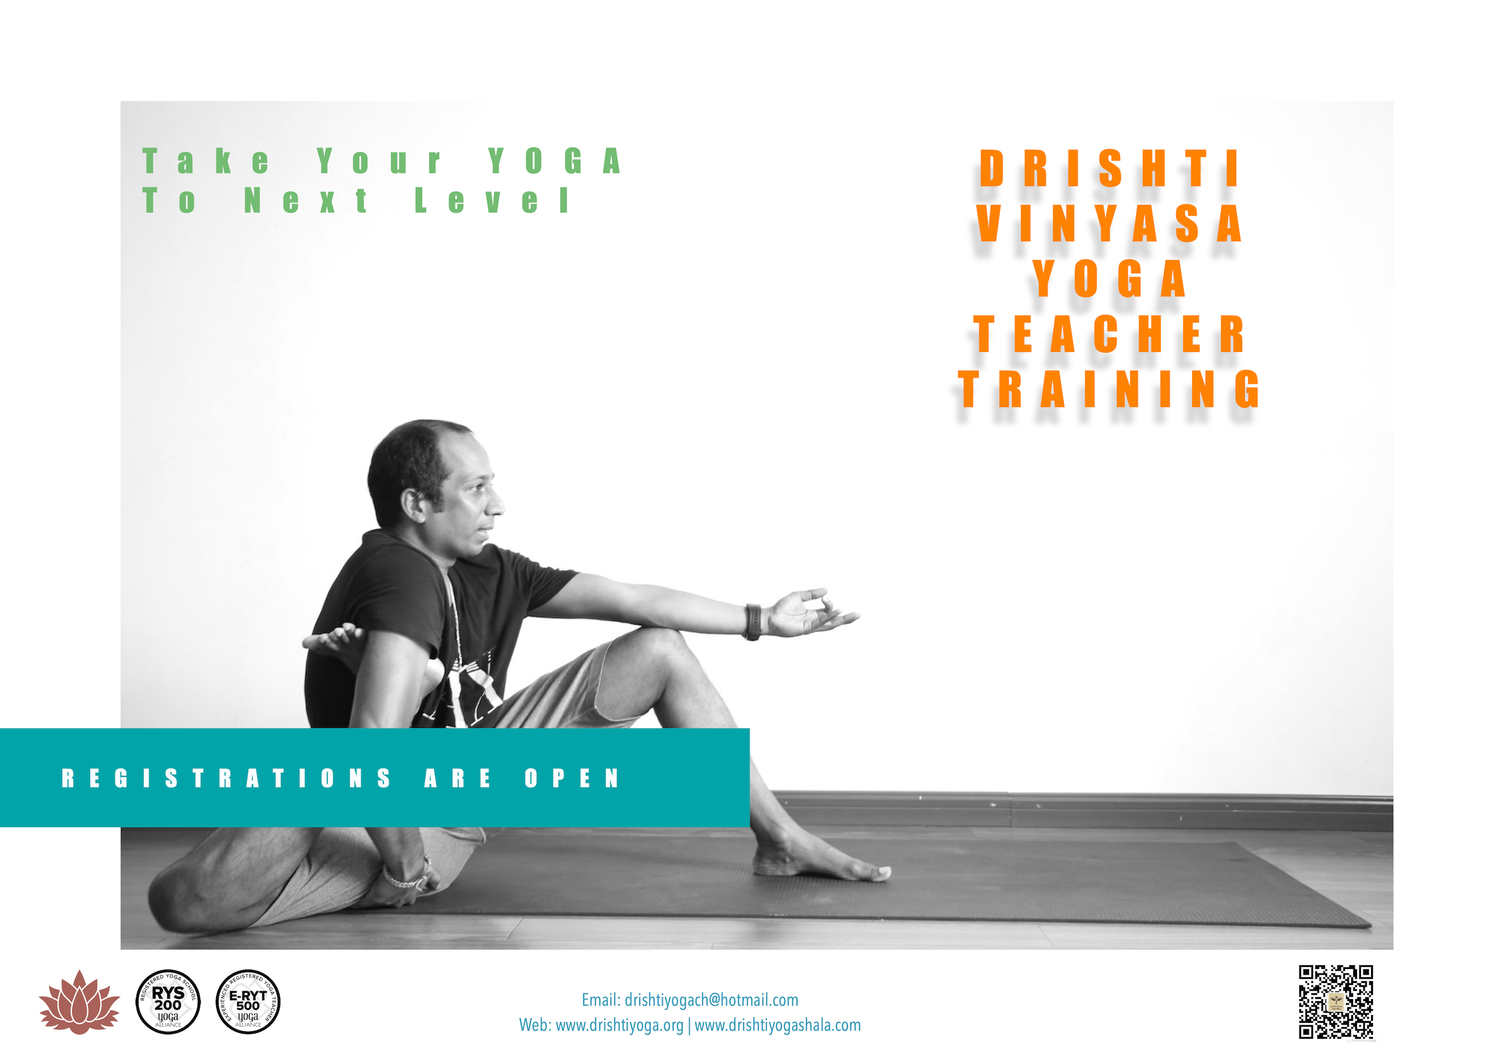 Drishti Vinyasa Yoga Teacher Training - Aug-Nov 2020 - Shanghai, China 9-p1.jpg